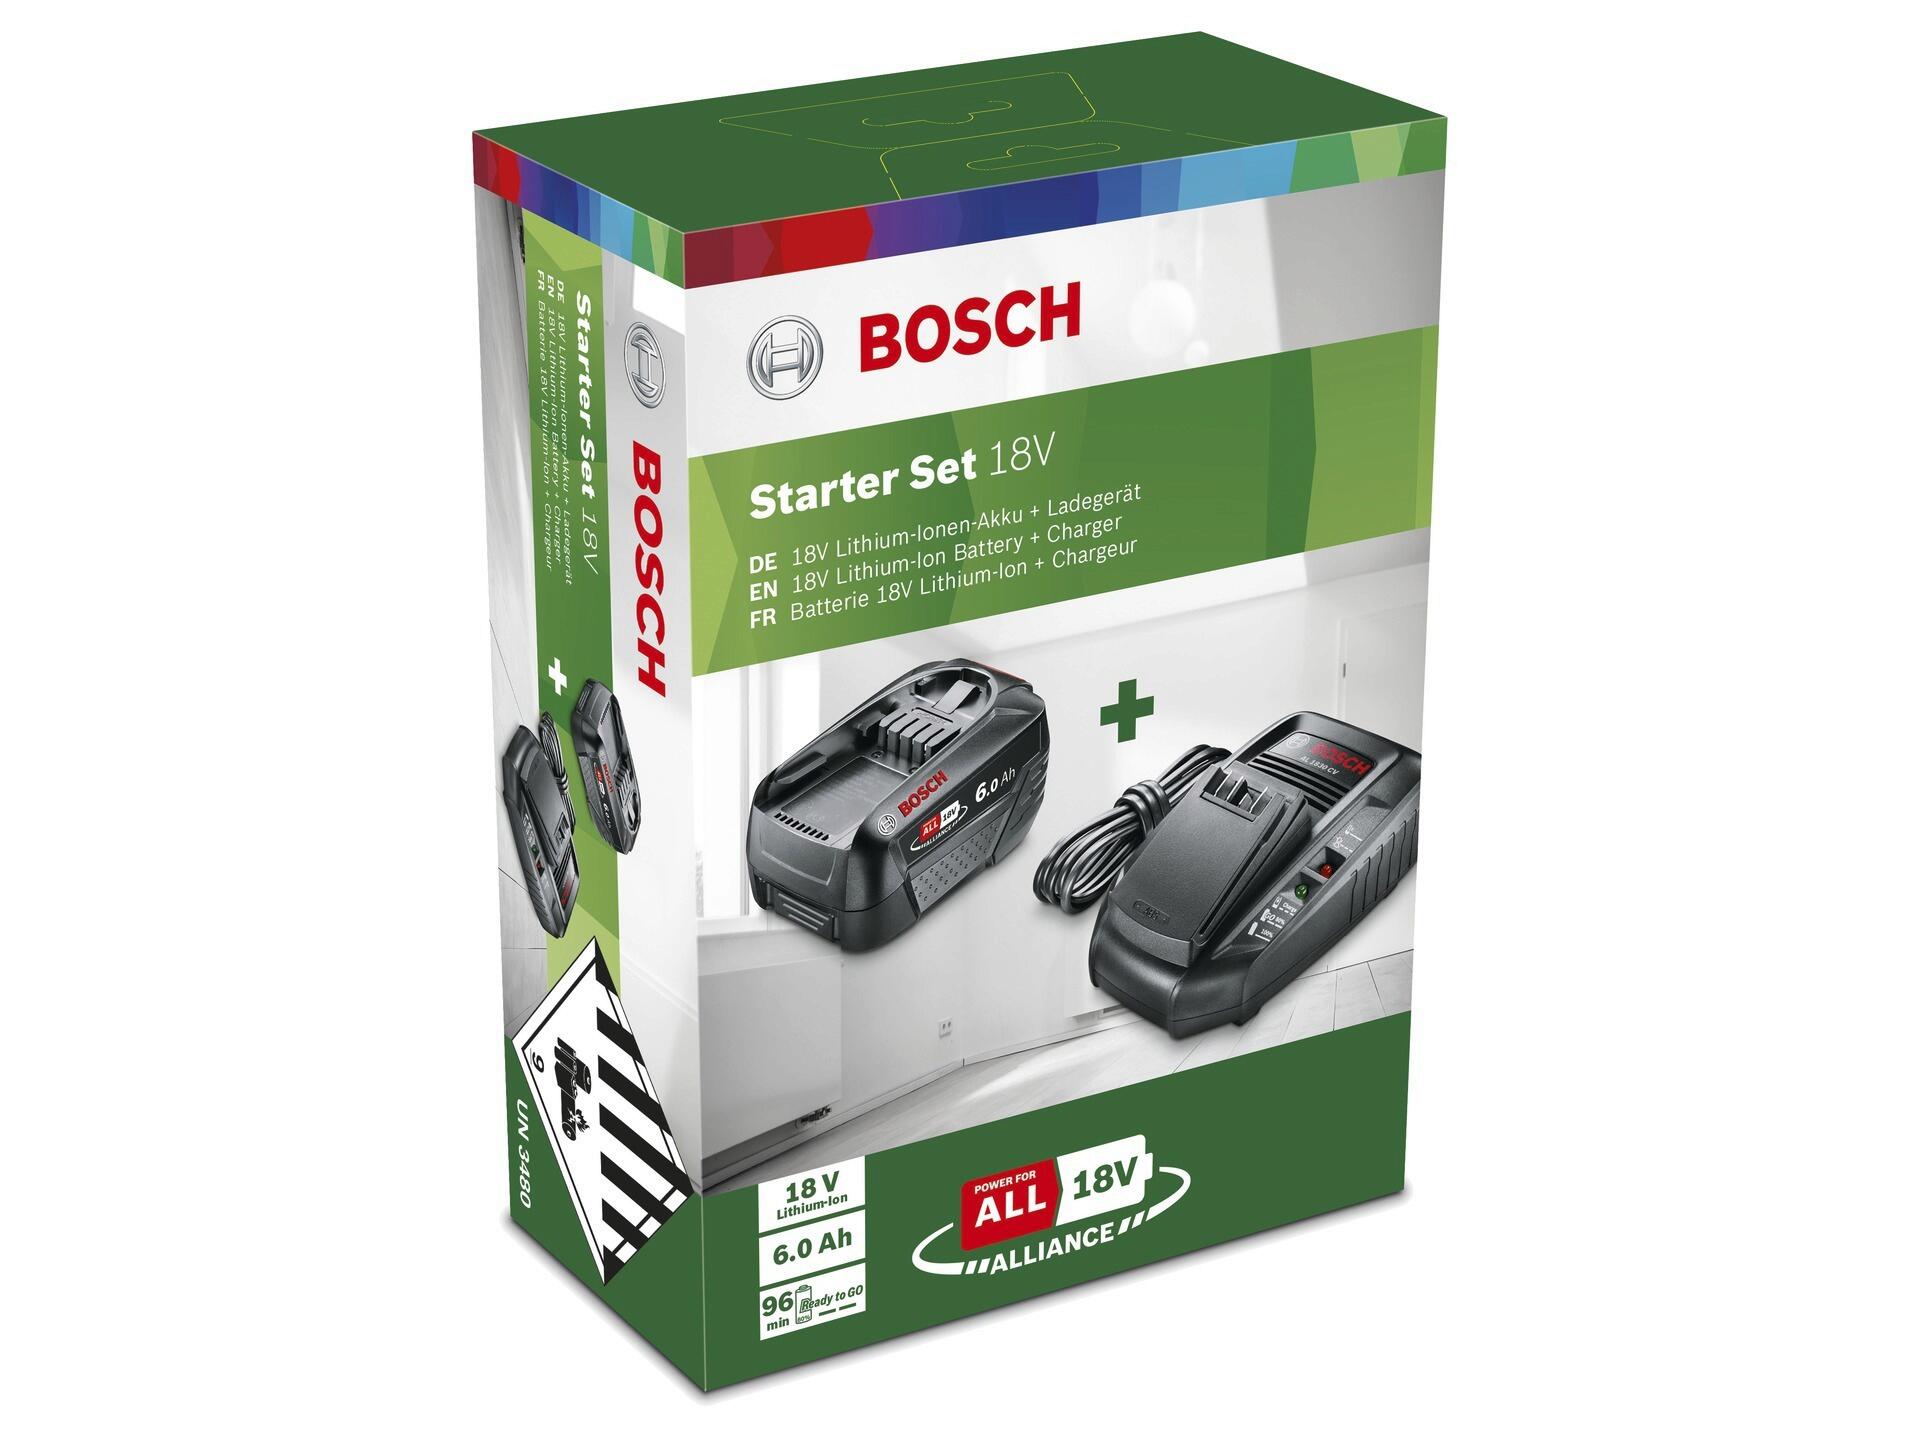 Bosch pack de base batterie 18V Li-Ion 6Ah + AL 1830 CV chargeur